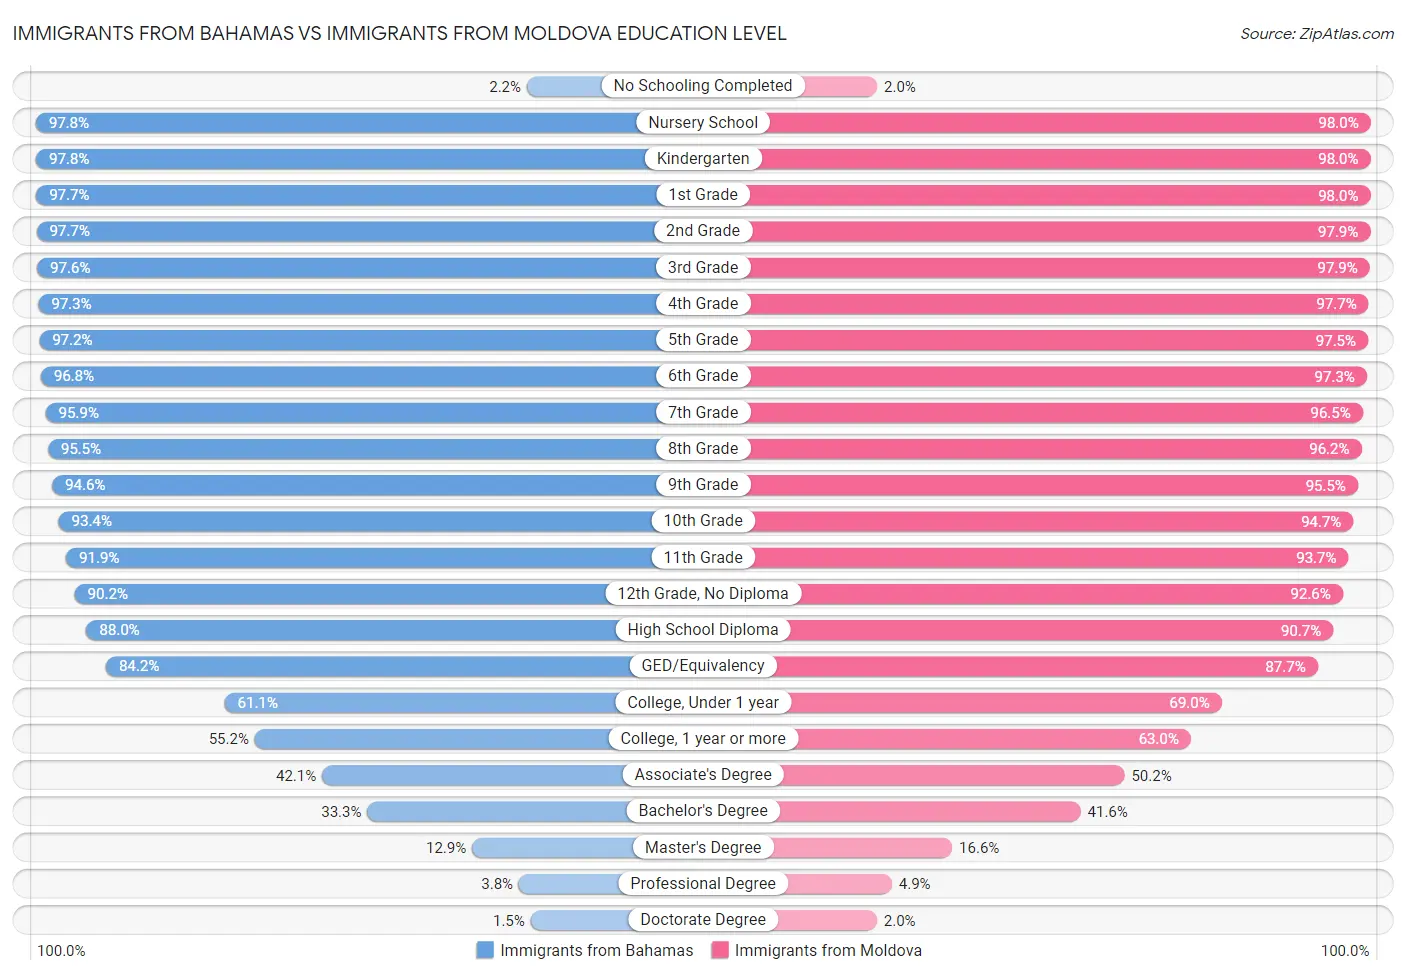 Immigrants from Bahamas vs Immigrants from Moldova Education Level